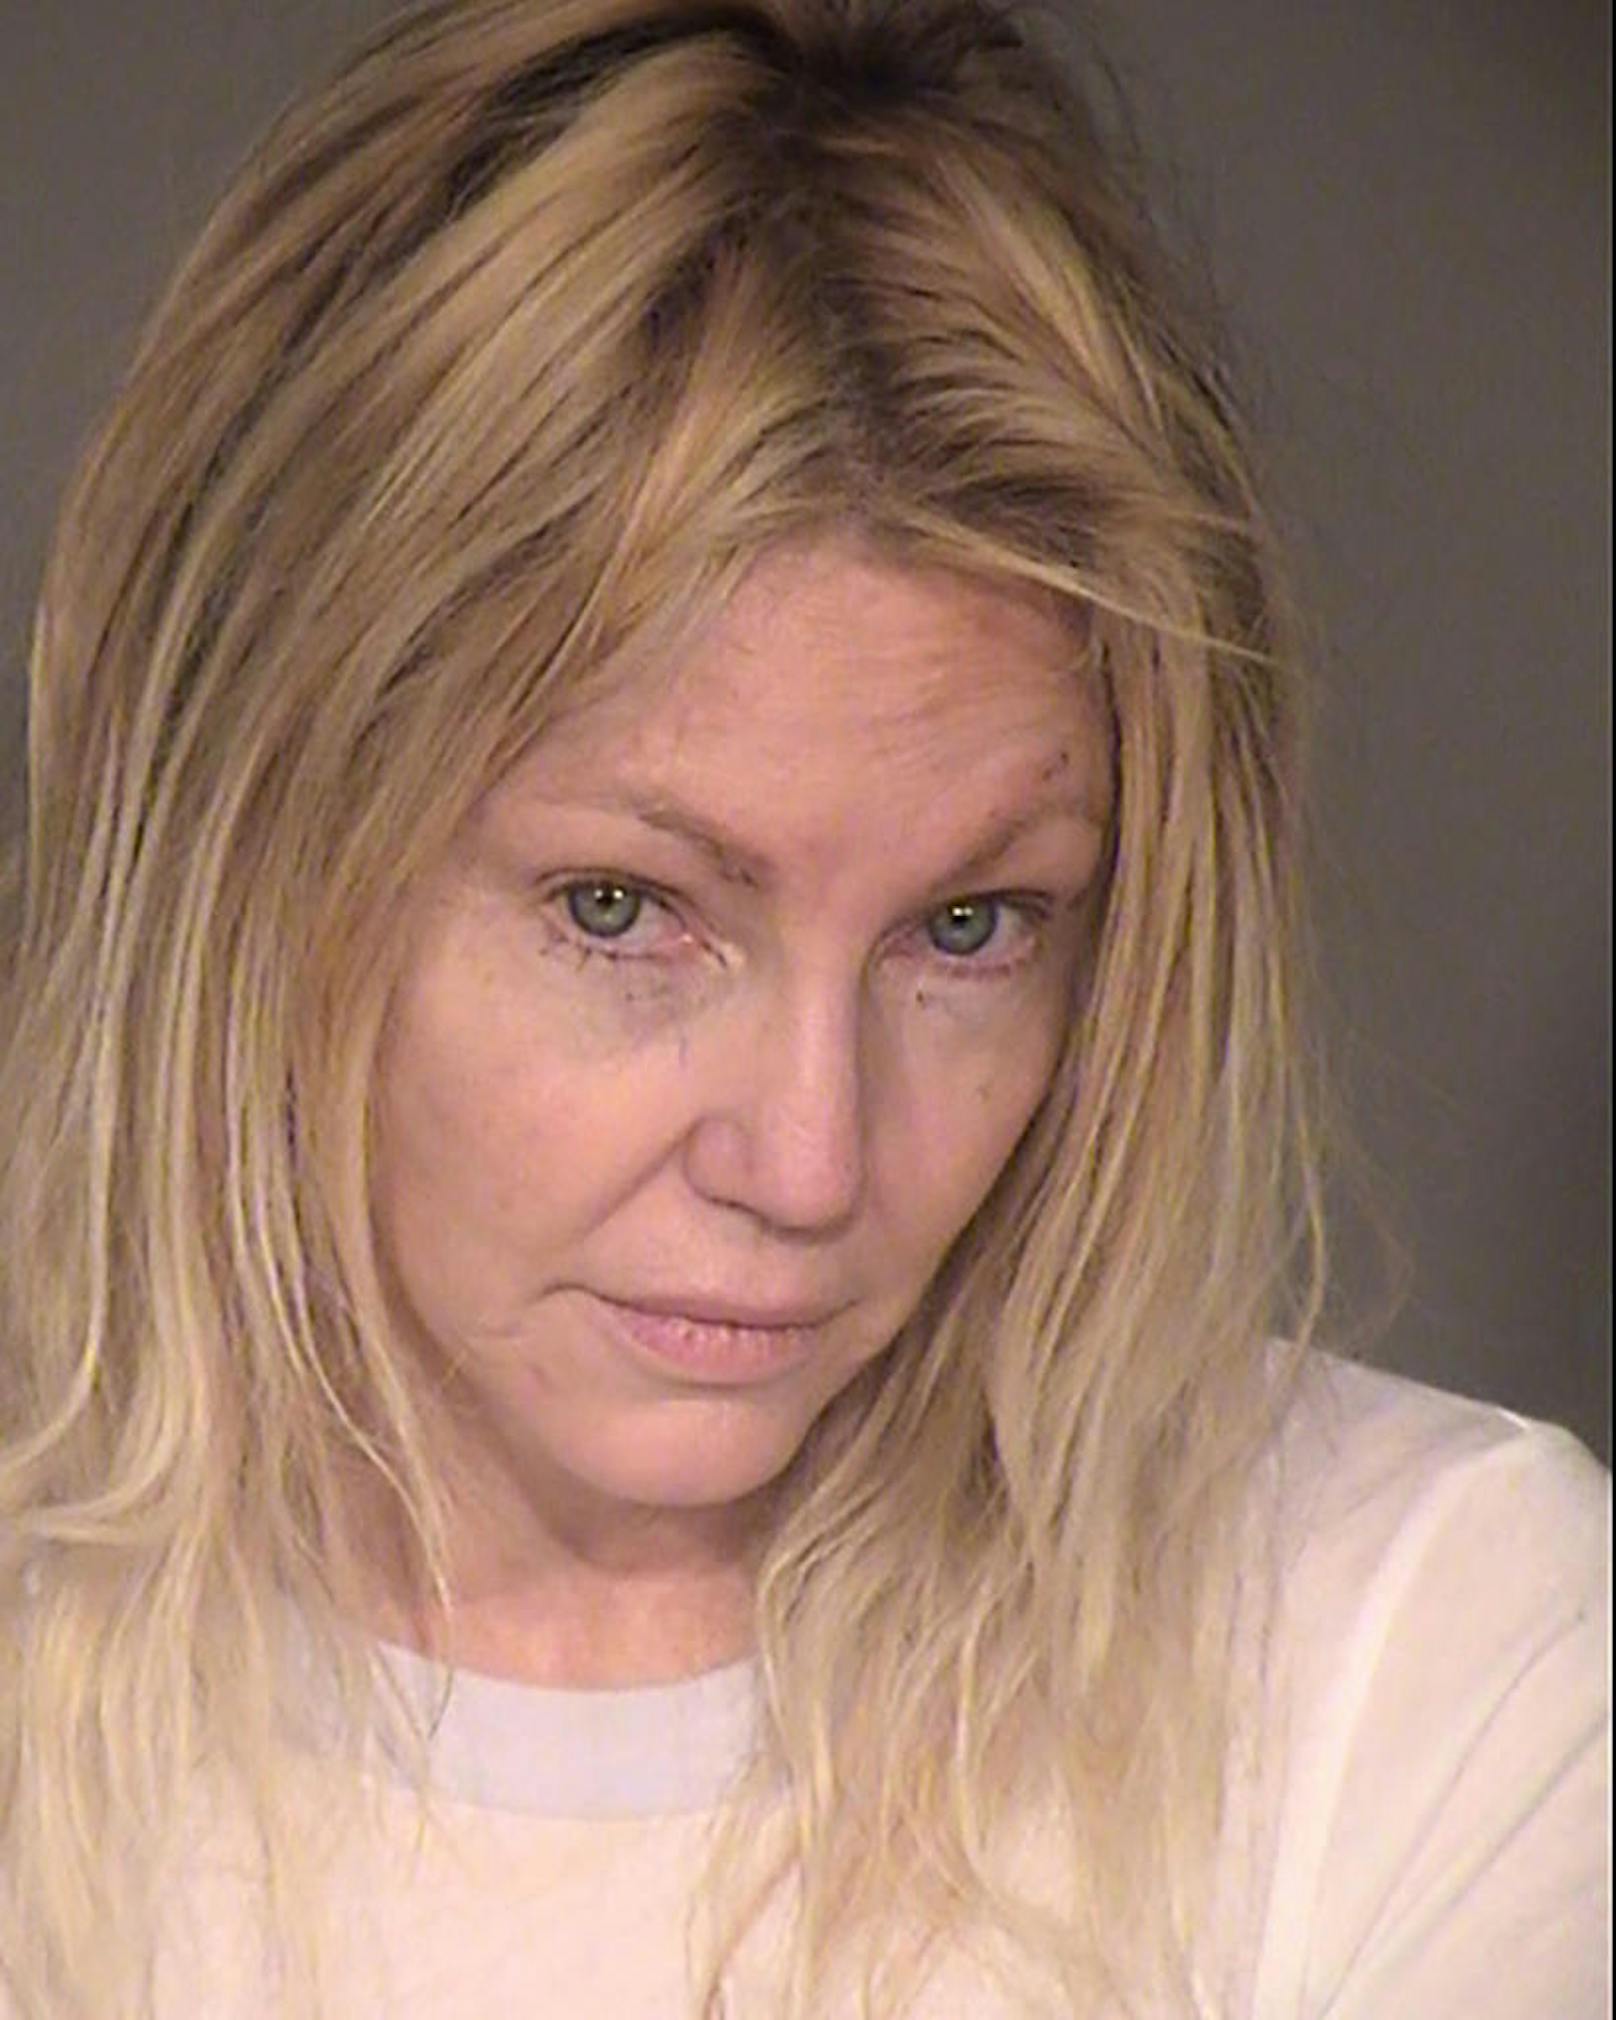 Ende Februar 2018 wurde Heather Locklear wegen Verdachts auf häusliche Gewalt verhaftet. Sie soll ihren Freund angegriffen haben
